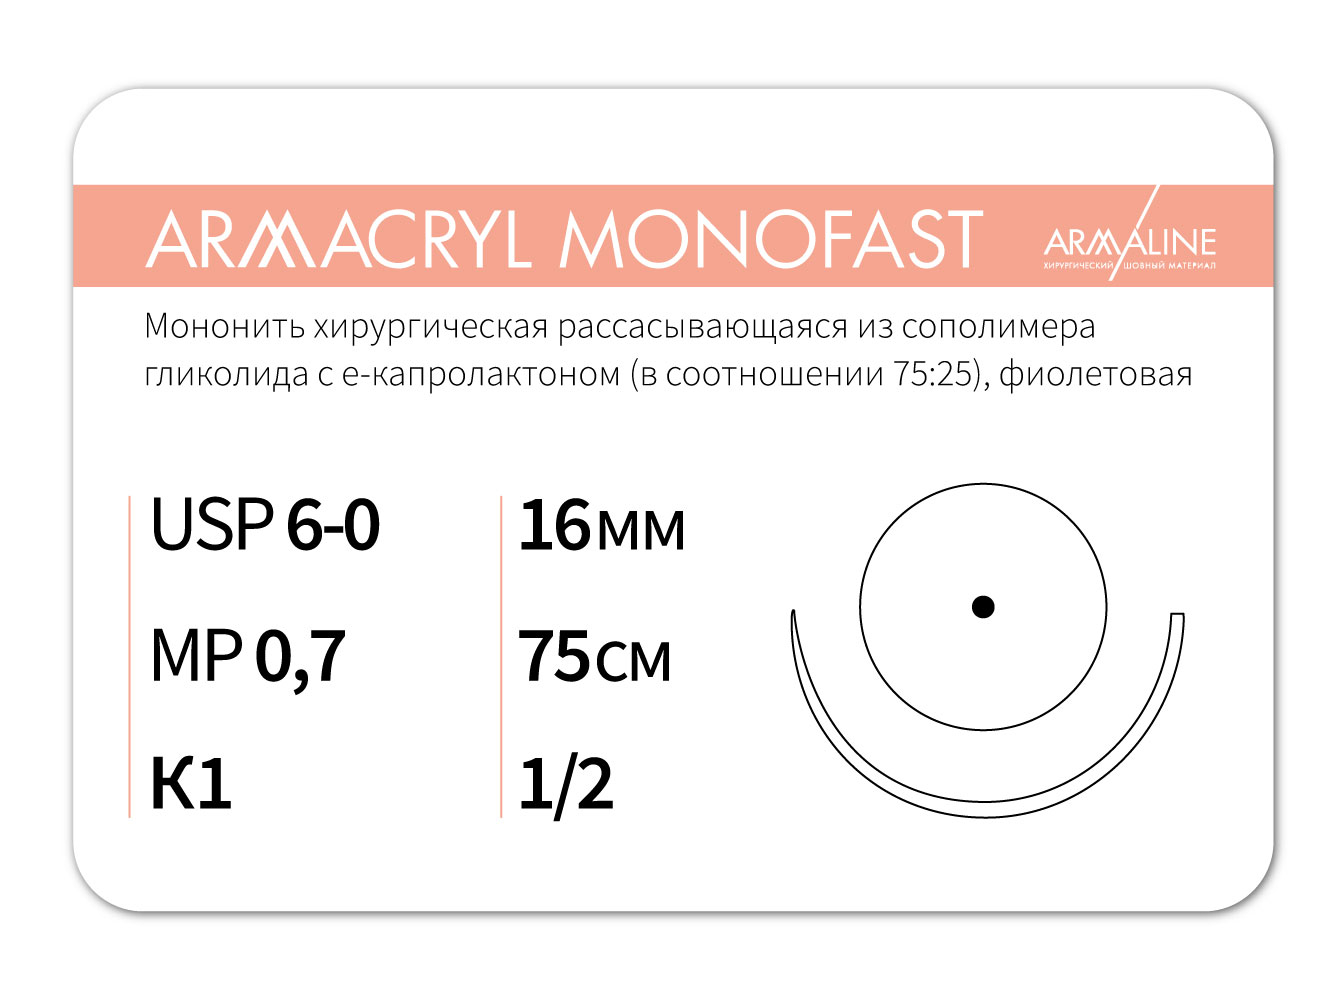 ARMACRYL MONOFAST/Армакрил монофаст (6-0) 75 см - материал хирургический шовный стерильный с атравматической колющей иглой